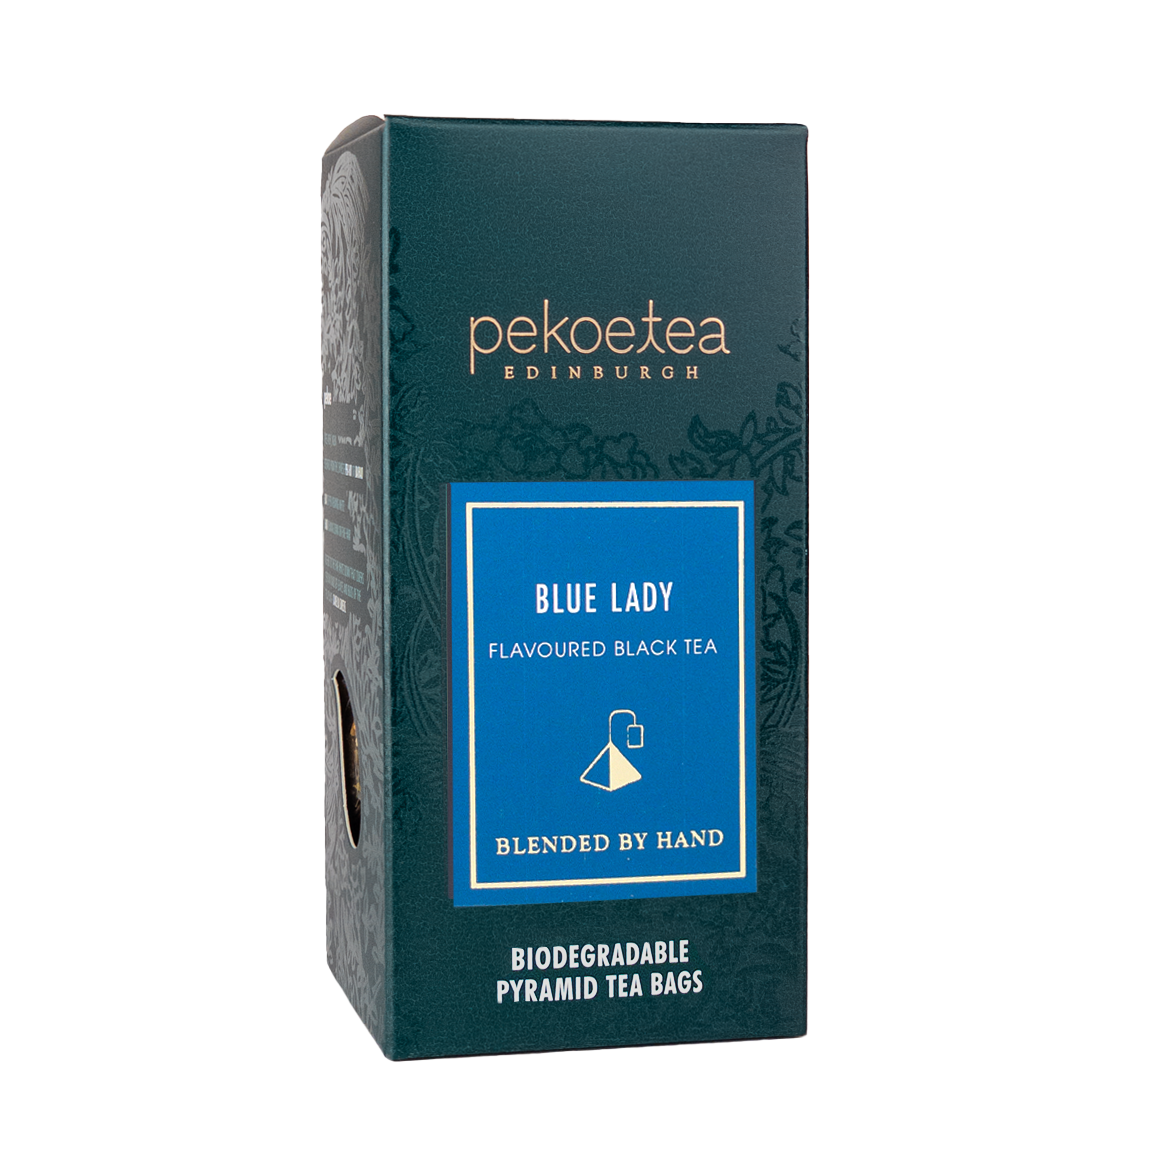 PekoeTea Edinburgh Blue Lady Hand Blended Flavoured Black Tea Biodegradable Pyramid Teabags Box 